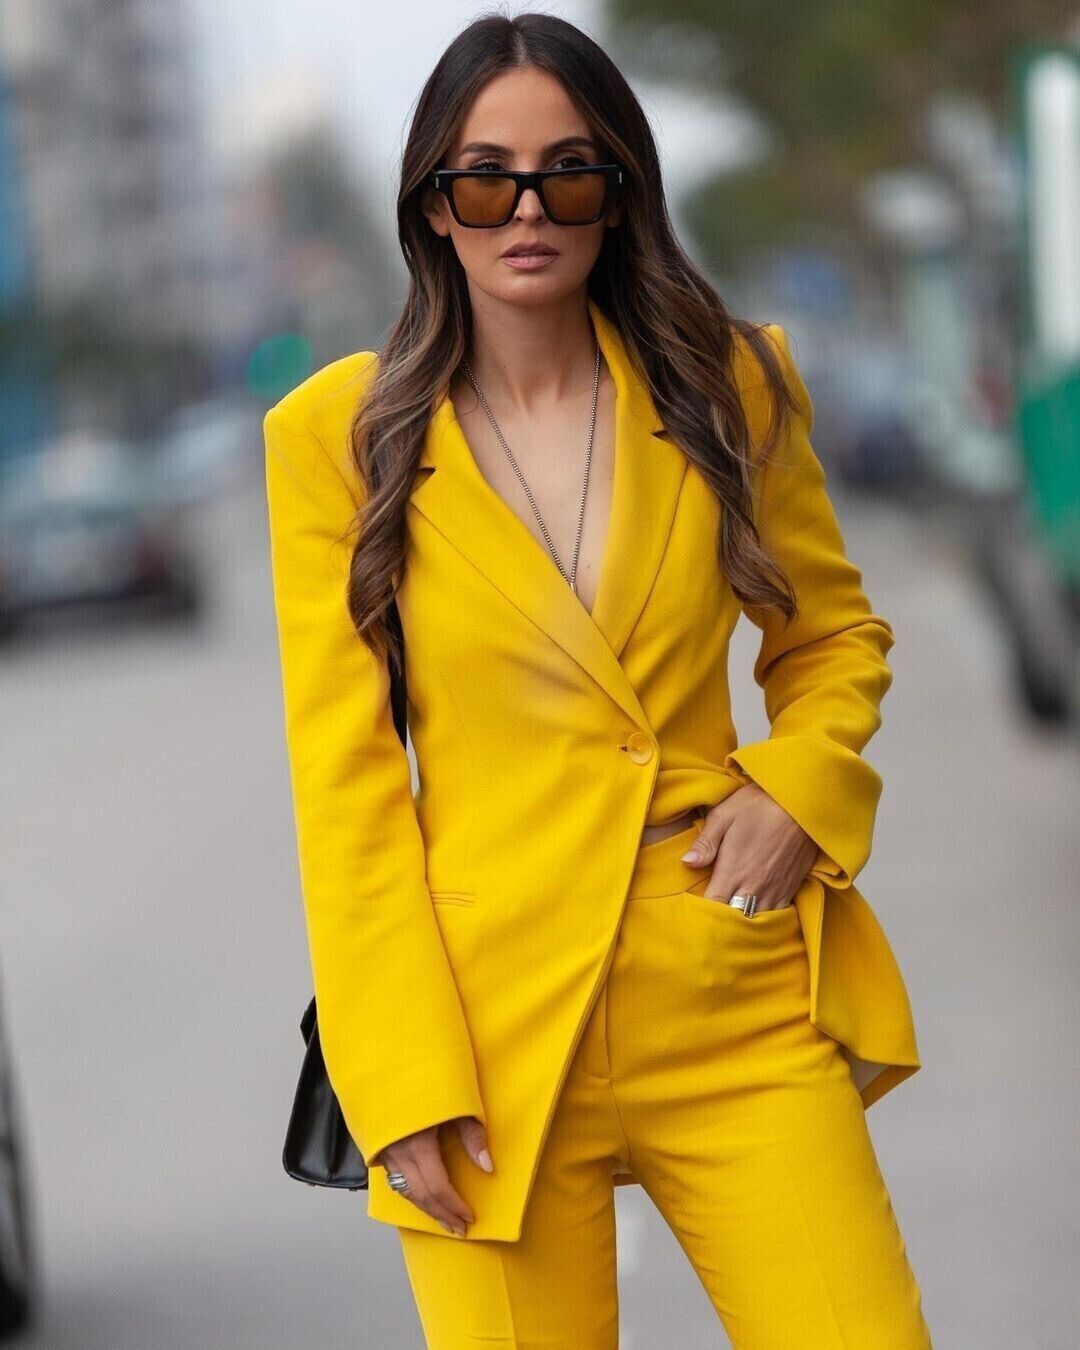 Zara Double Breasted Blazer Yellow 2277/628 Size S